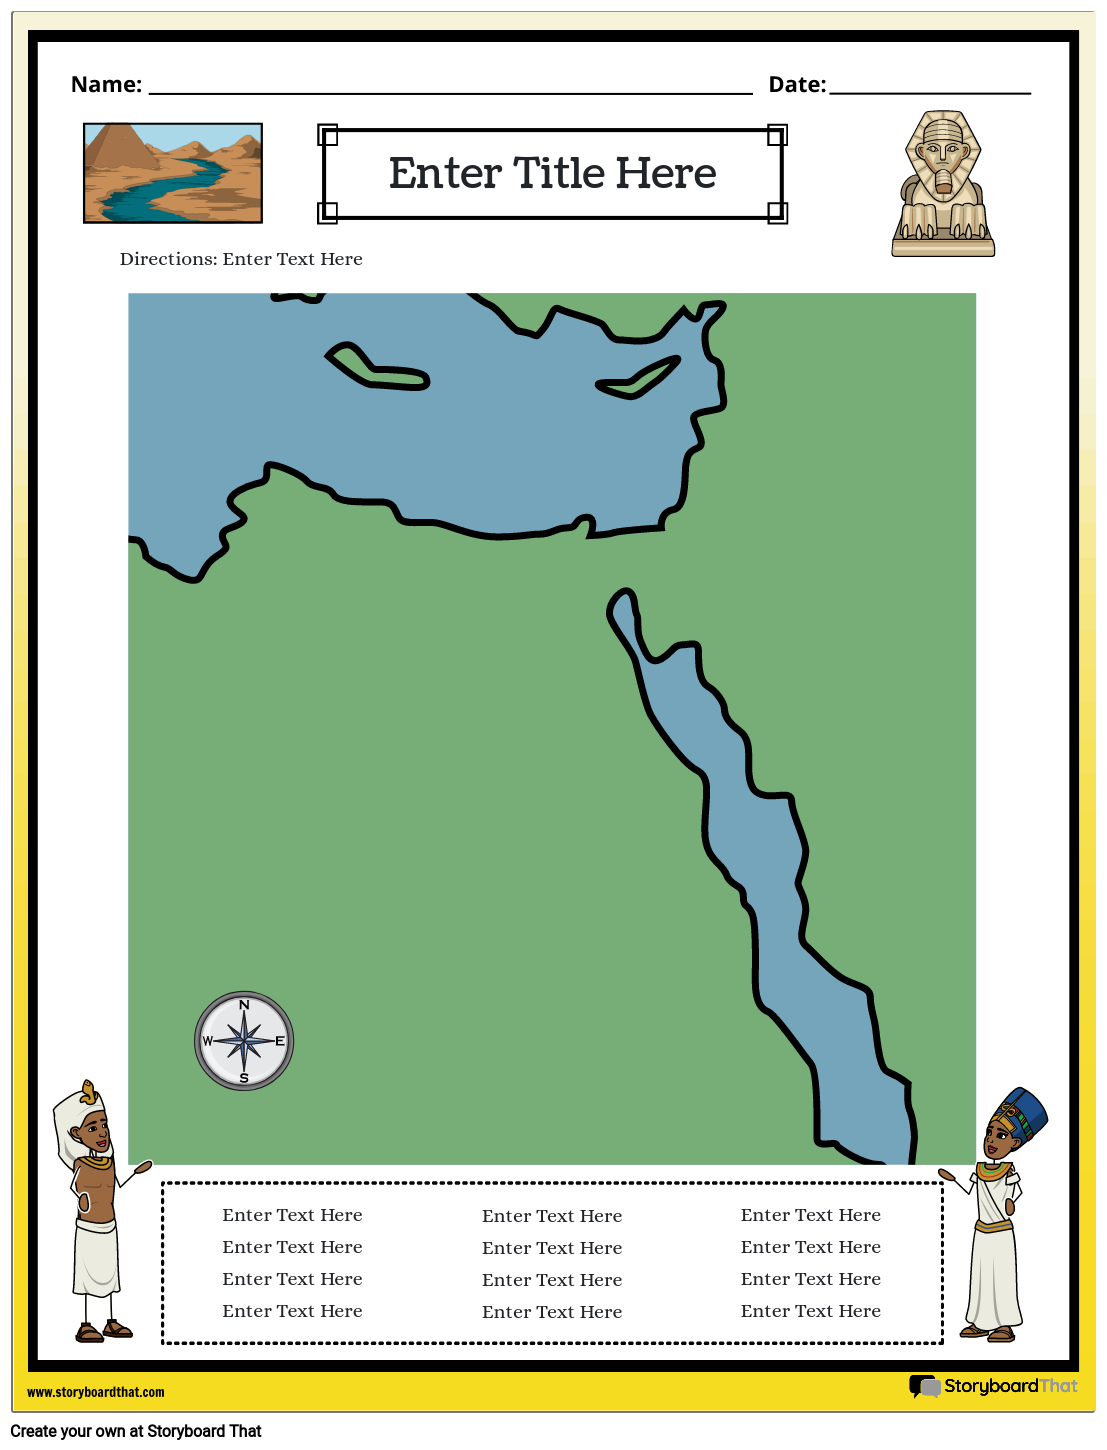 Zemljevid Starega Egipta